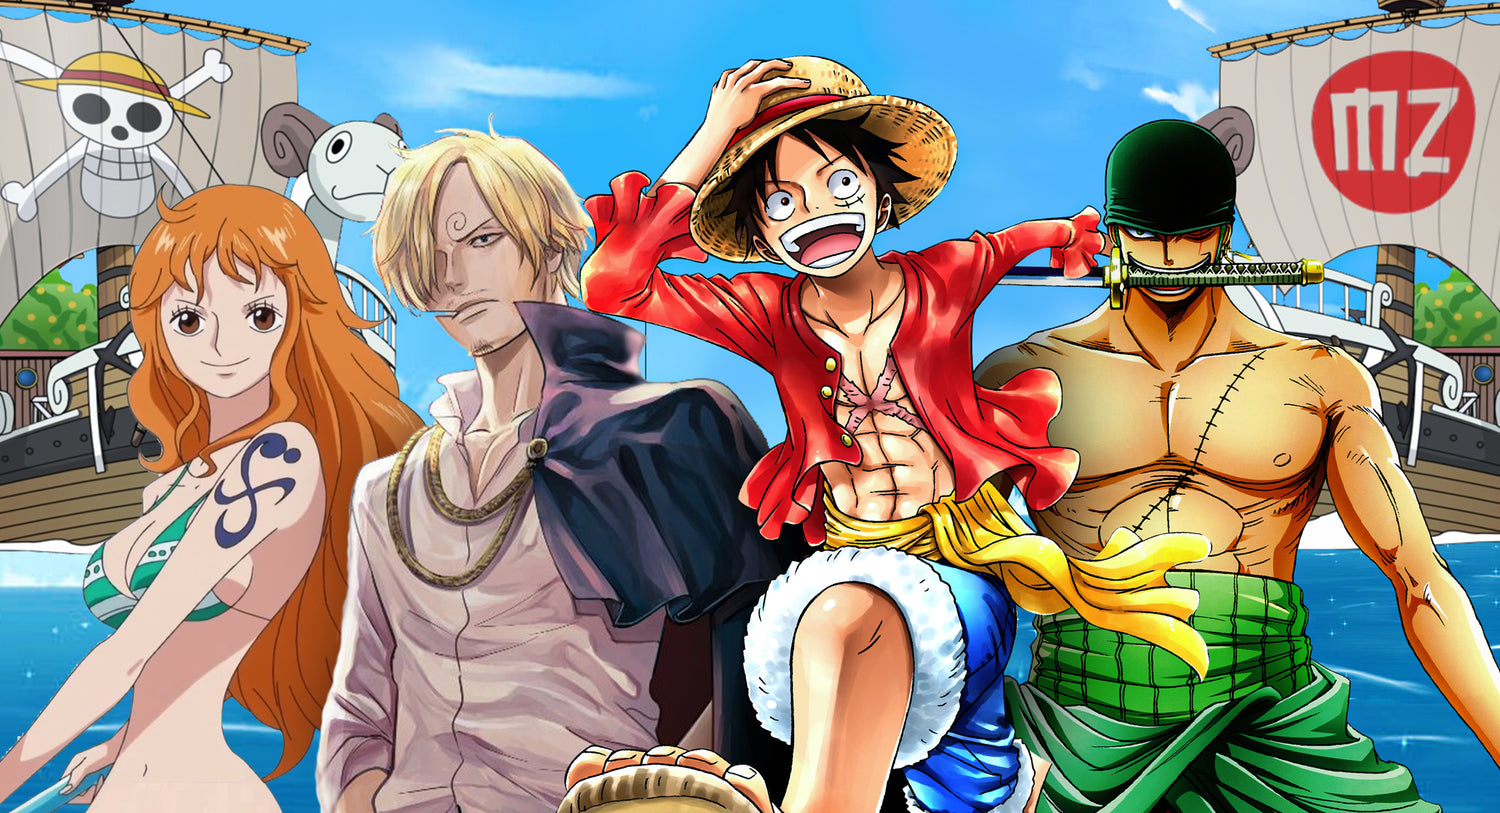 Tableau Manga One Piece Portgas D. Ace 5 pièces